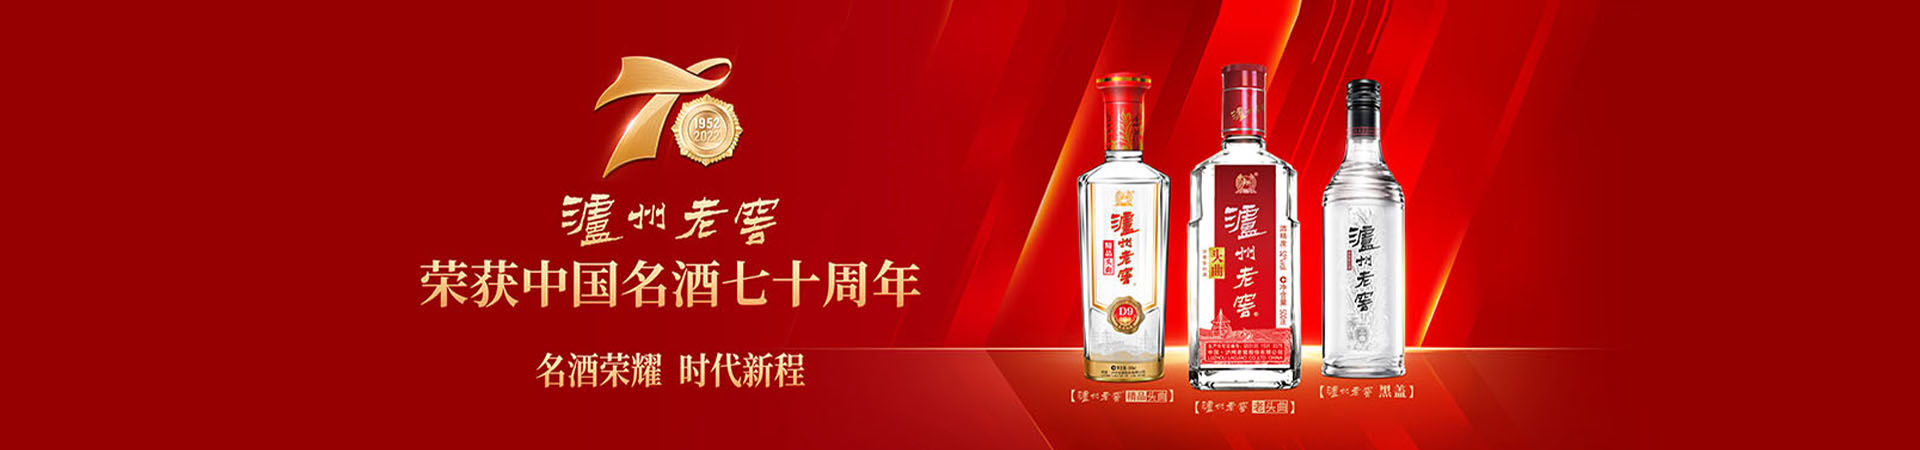 瀘州老窖榮獲中國名酒七十周年